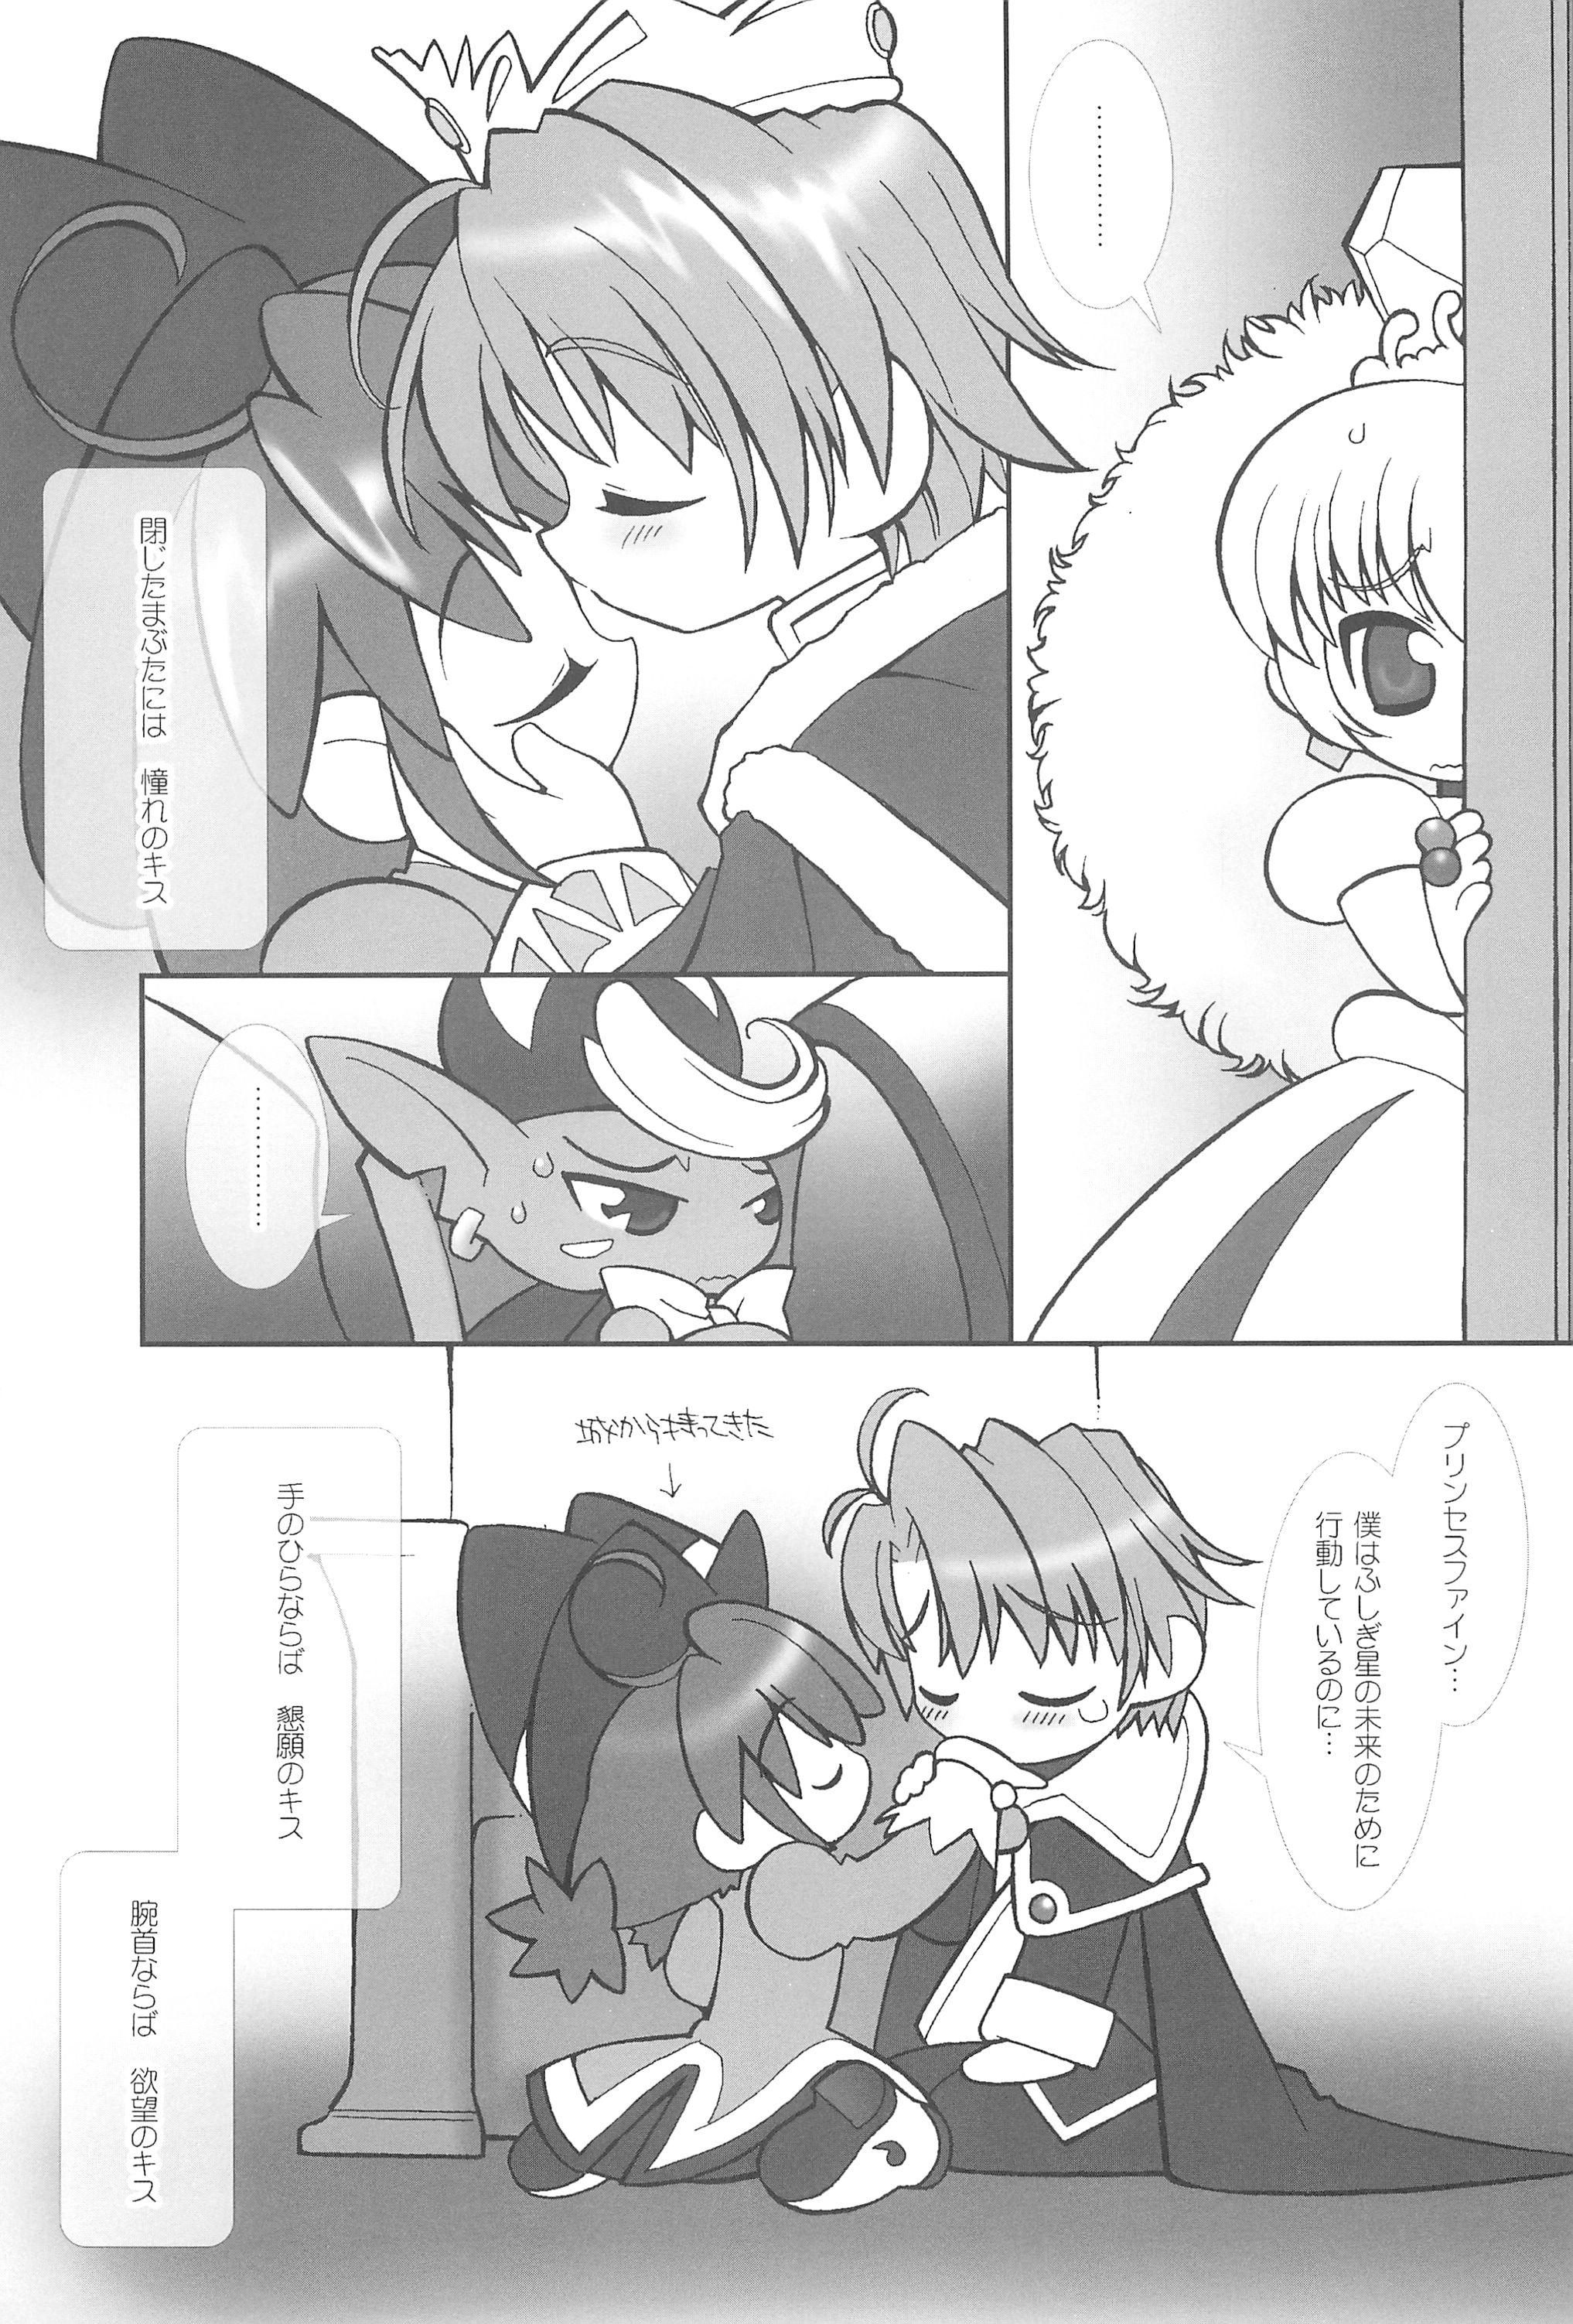 Sexy Whores Tsuki no Ura de Aimashou #6 - Let's go to the Darkside of the Moon #6 - Fushigiboshi no futagohime Str8 - Page 7